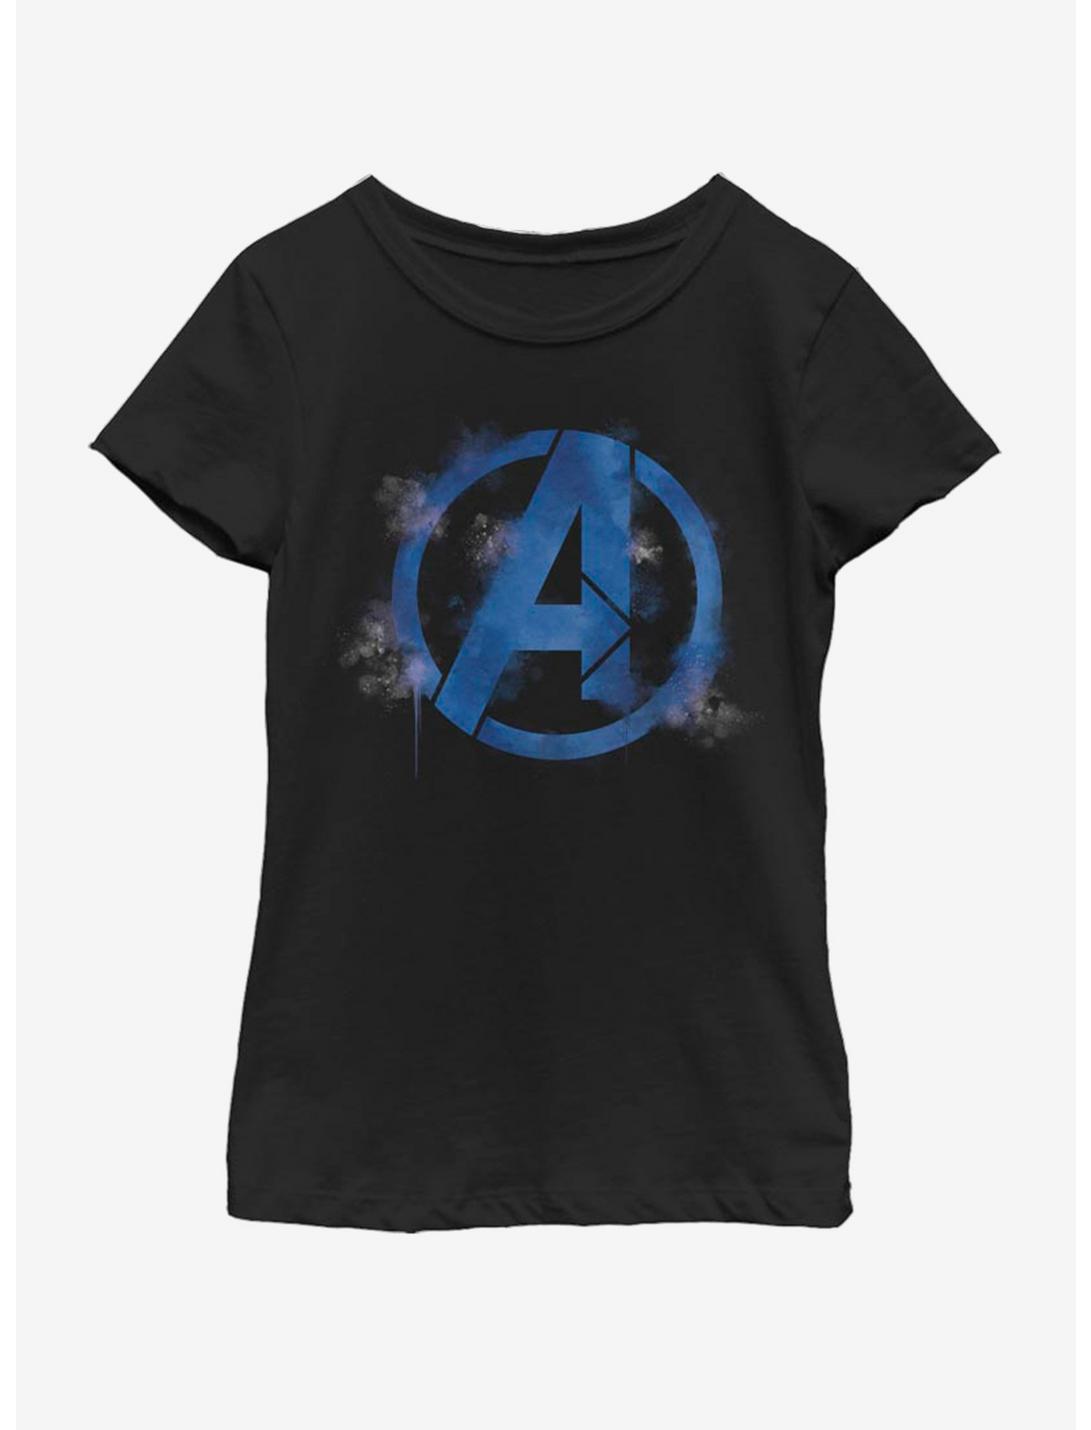 Marvel Avengers: Endgame Avengers Spray Logo Youth Girls T-Shirt, BLACK, hi-res